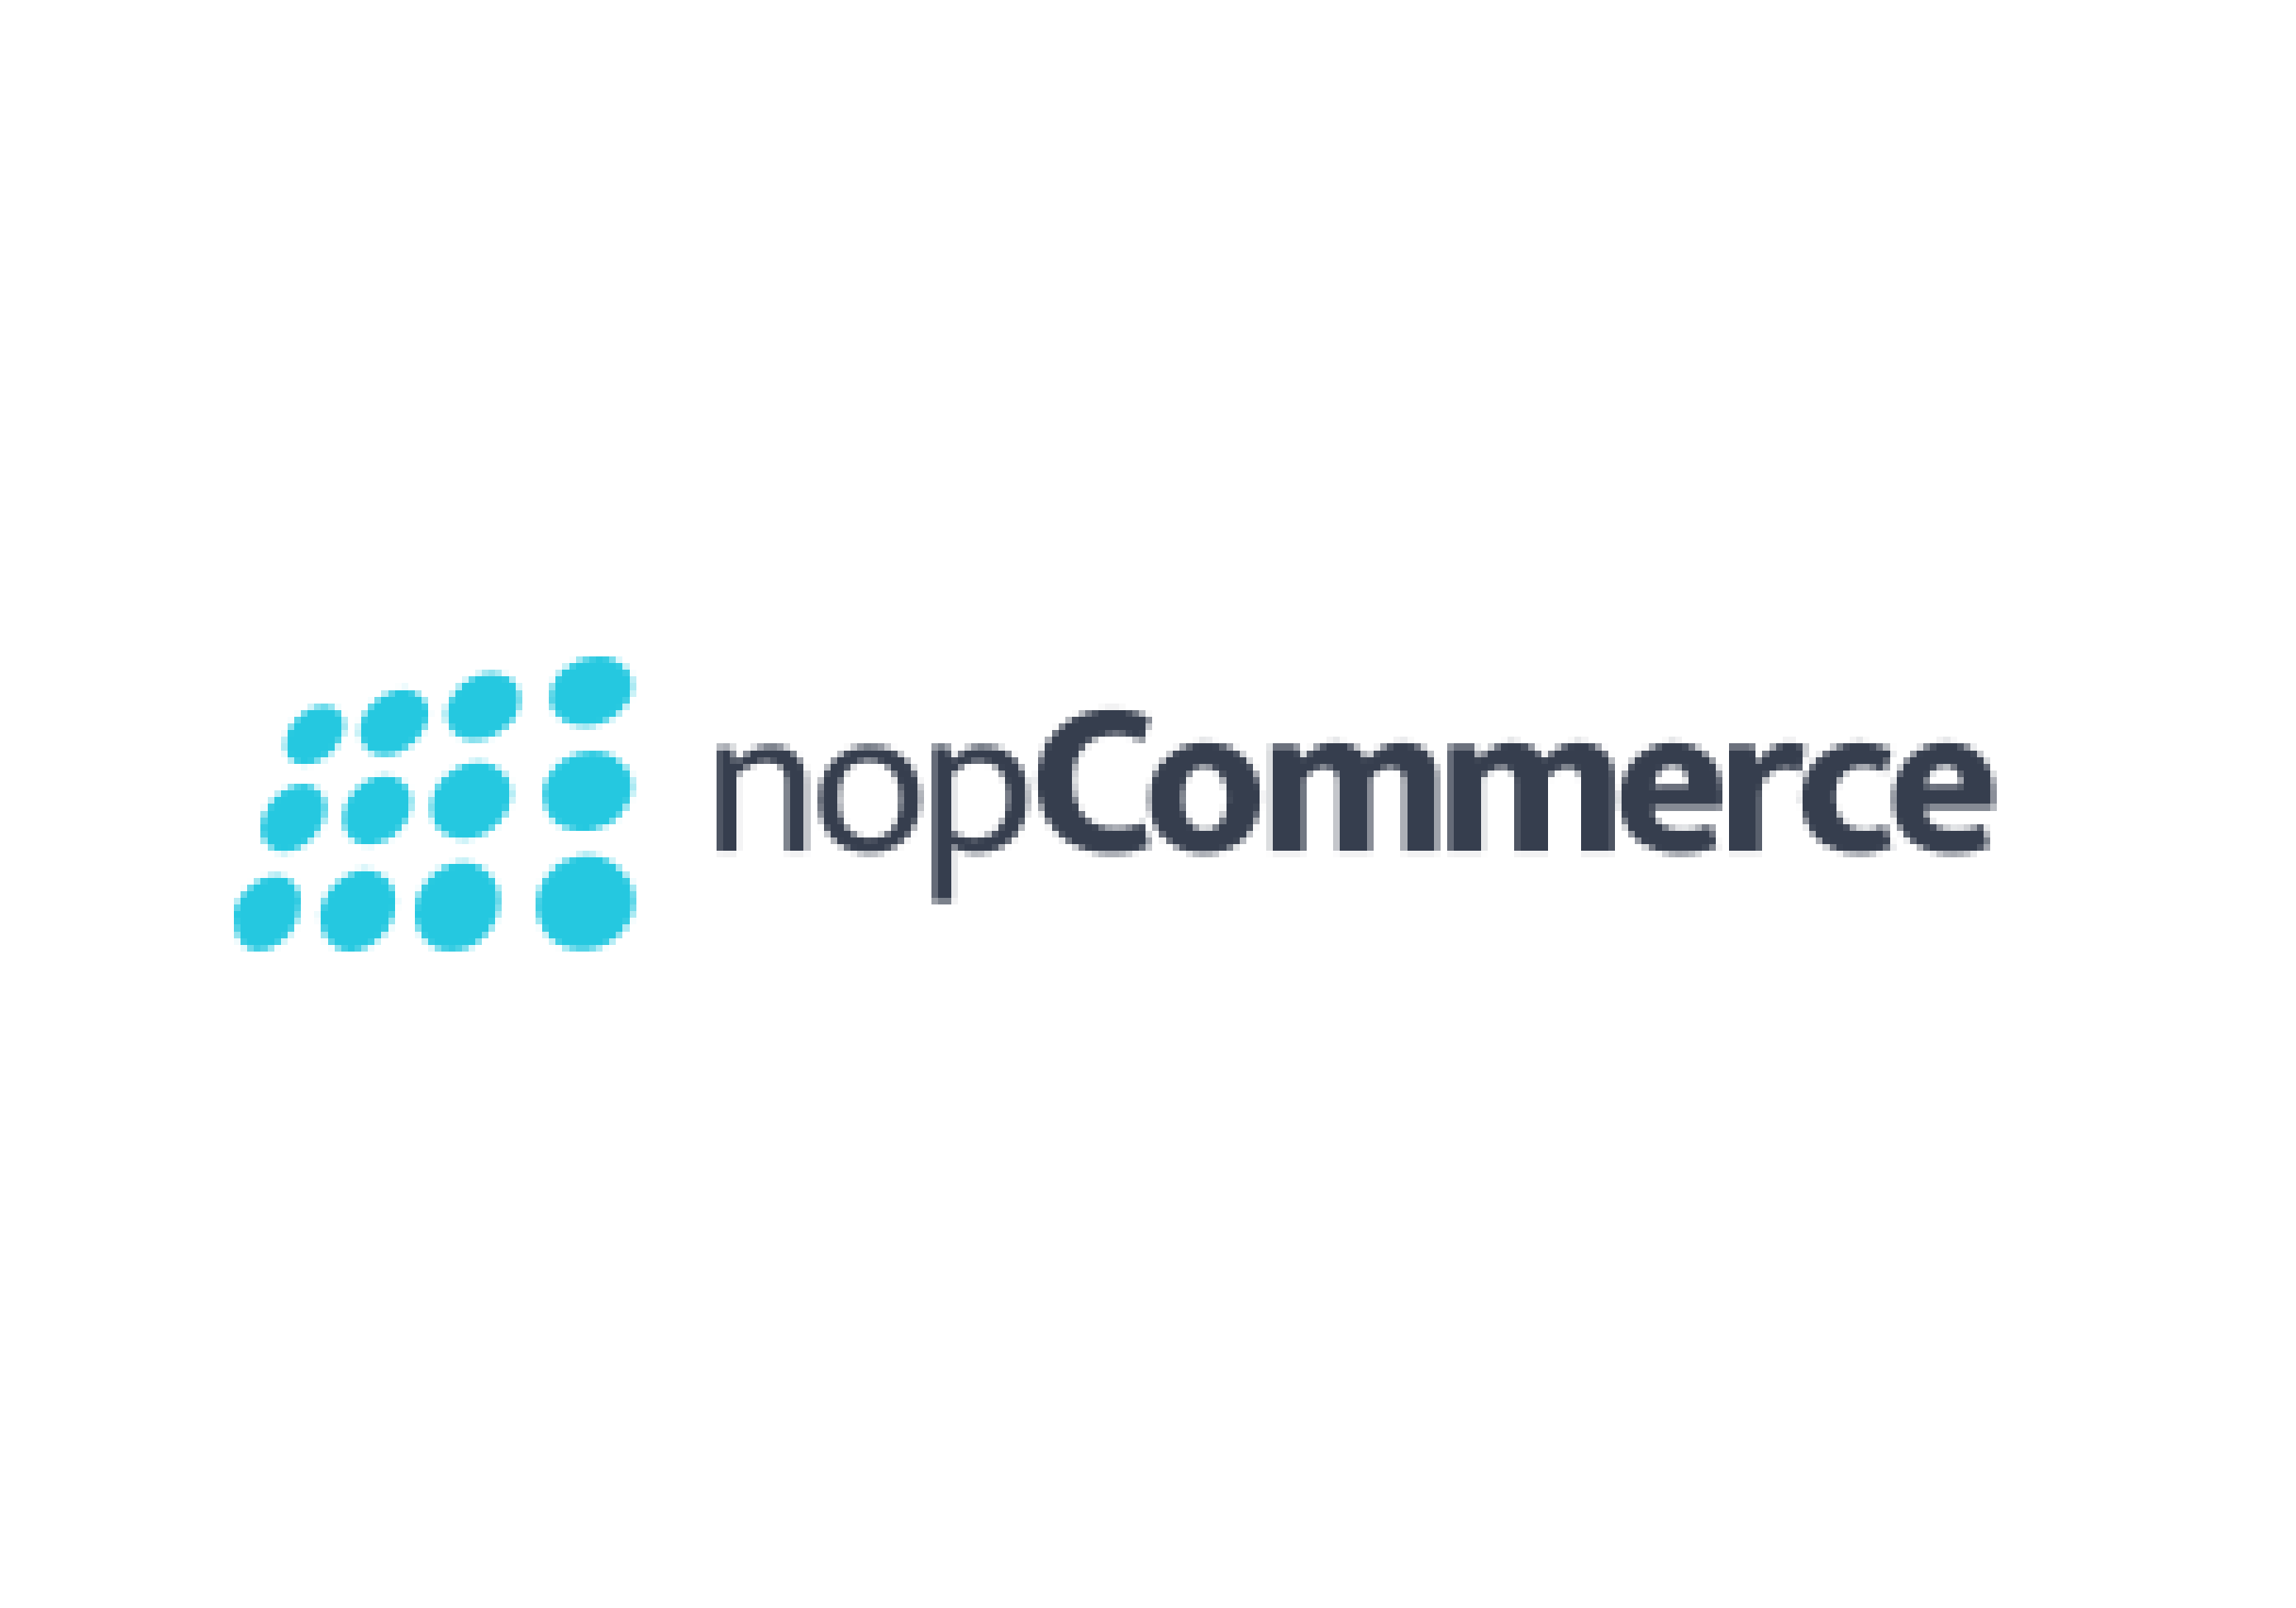 nop commerce processing integration